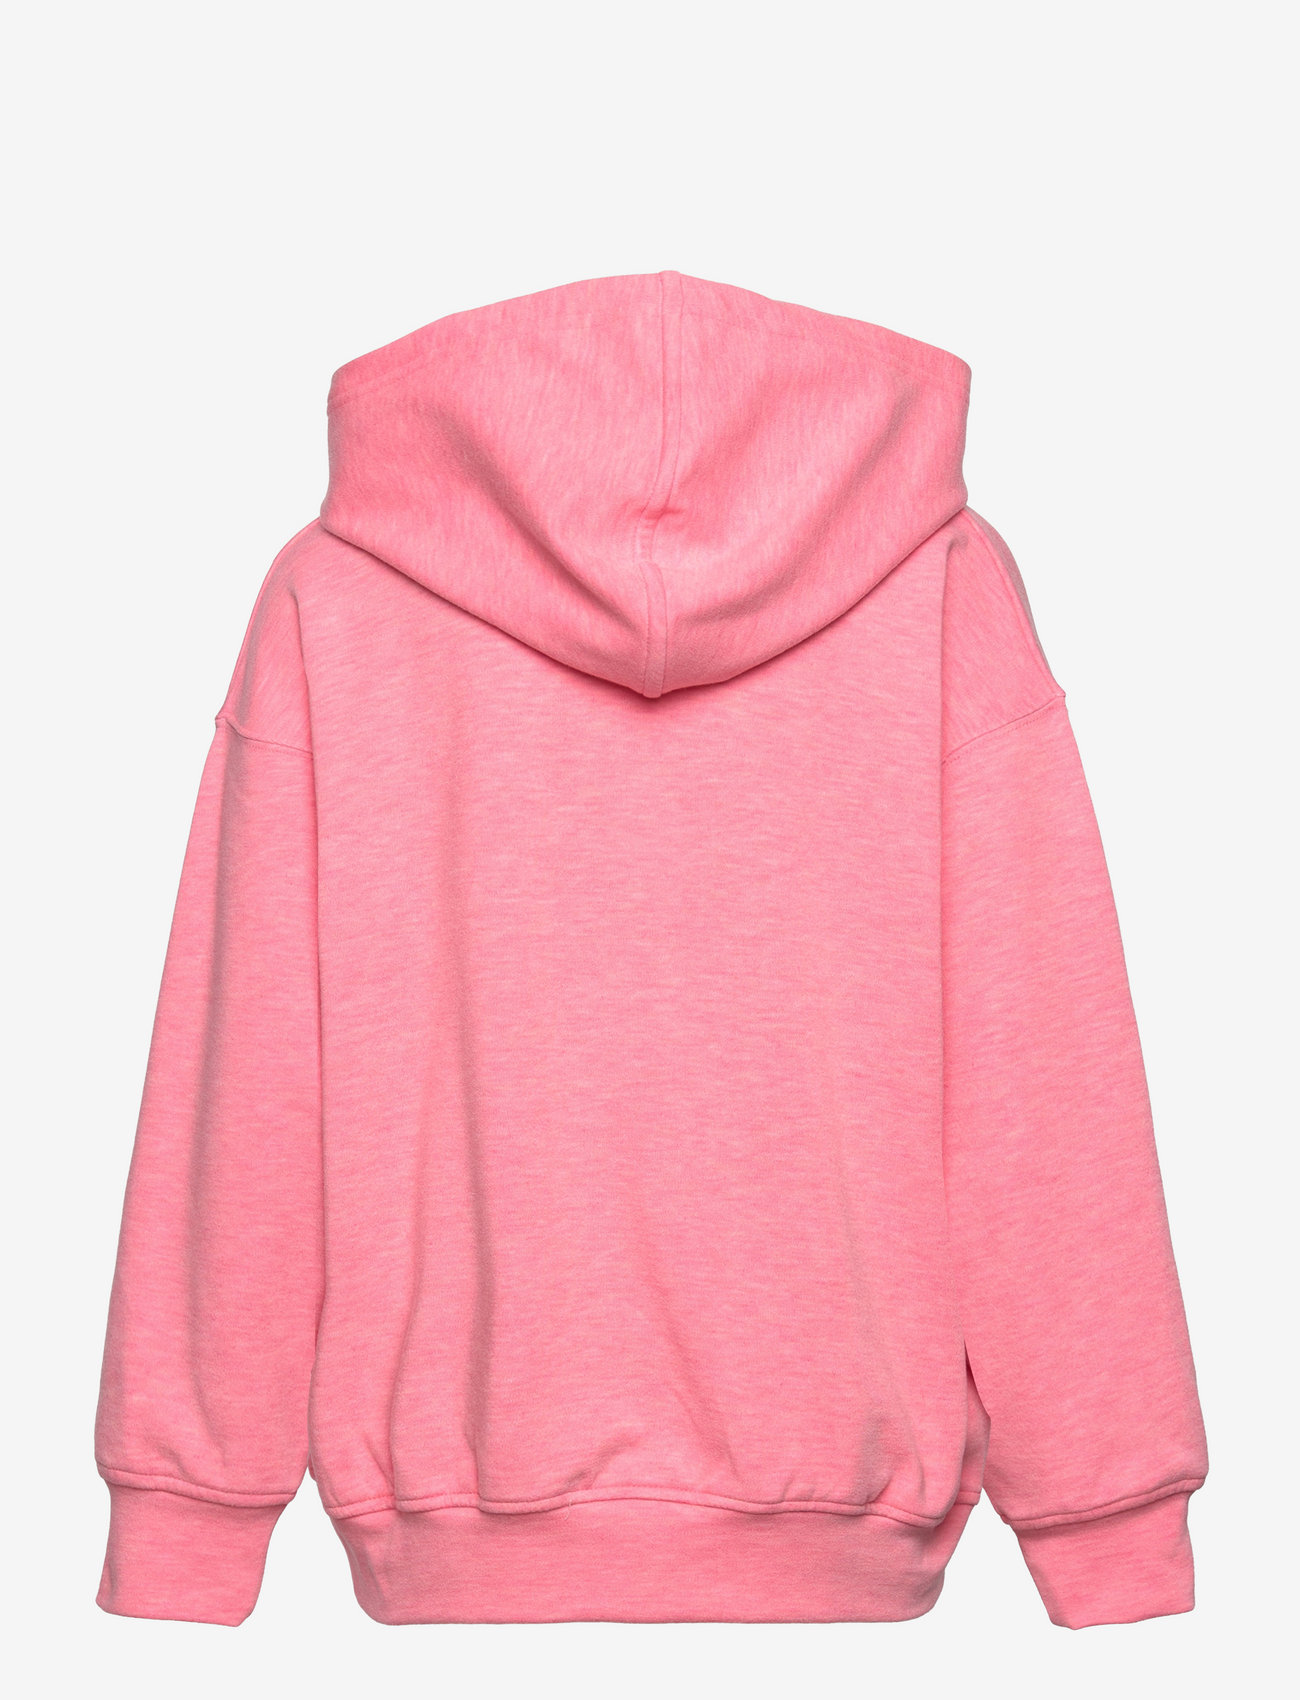 Sofie Schnoor Young - Sweatshirt - kapuzenpullover - l pink - 1